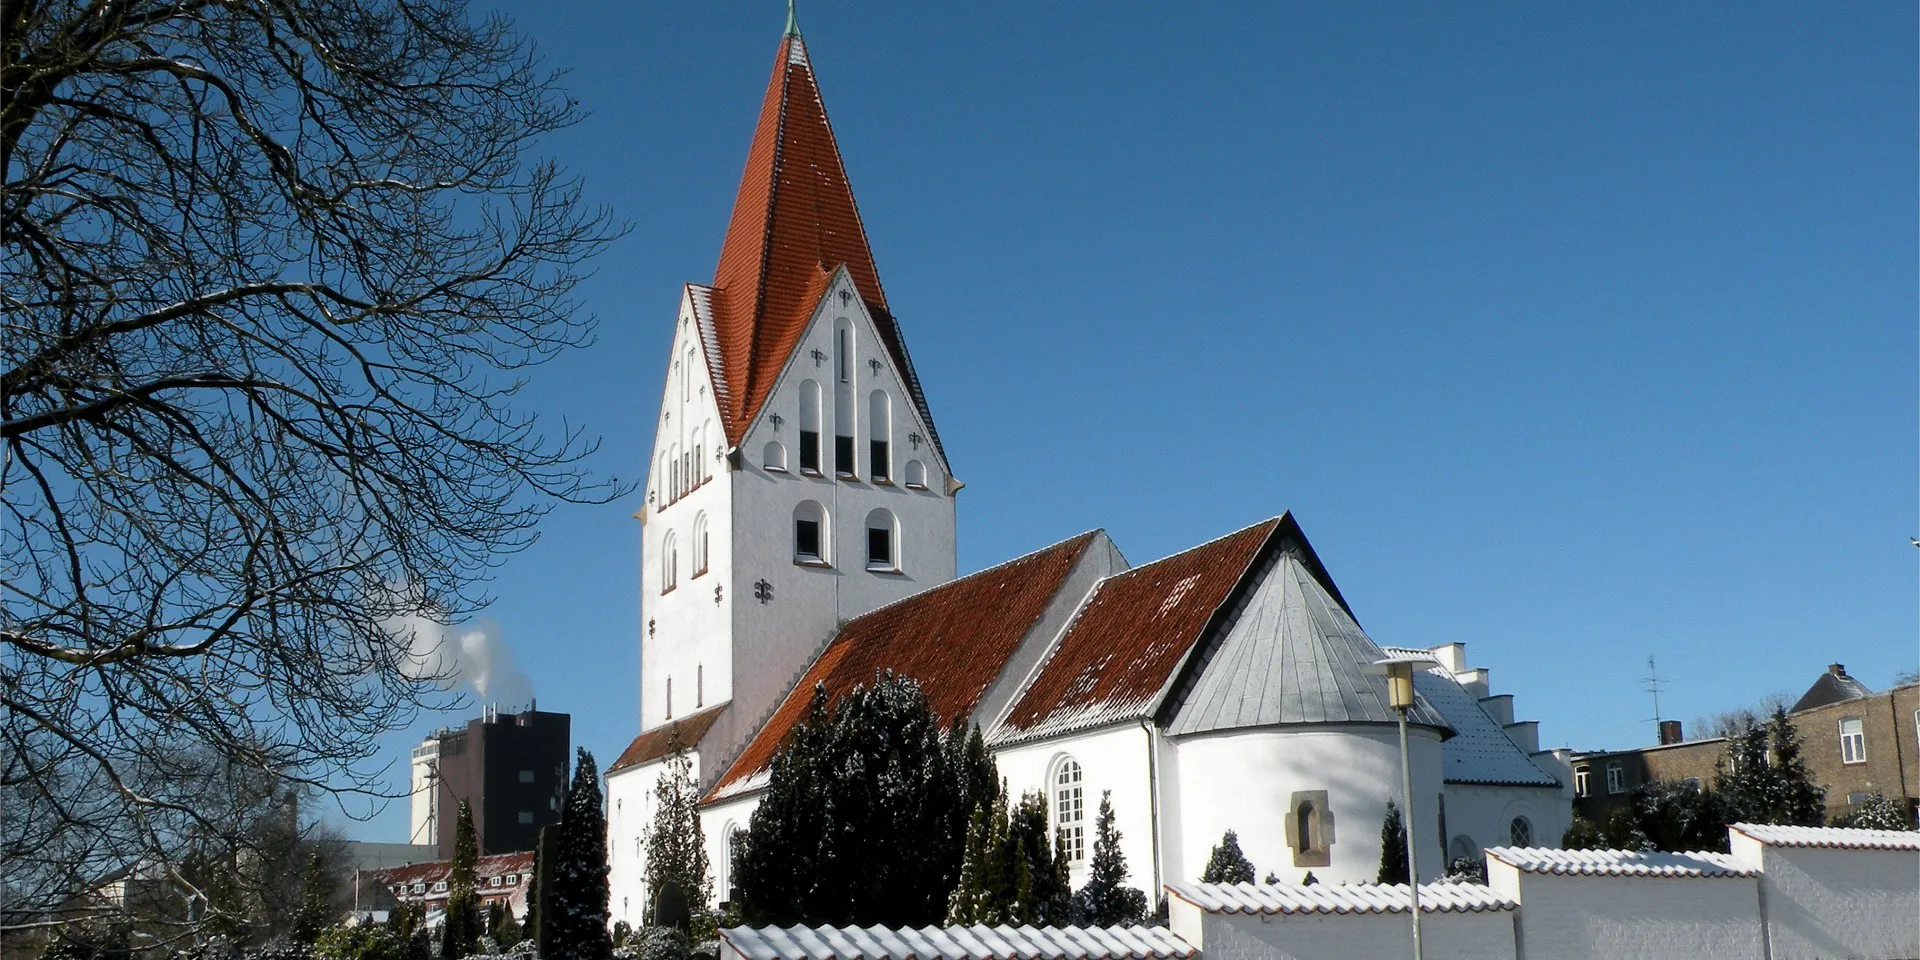 Gl. Haderslev Kirke